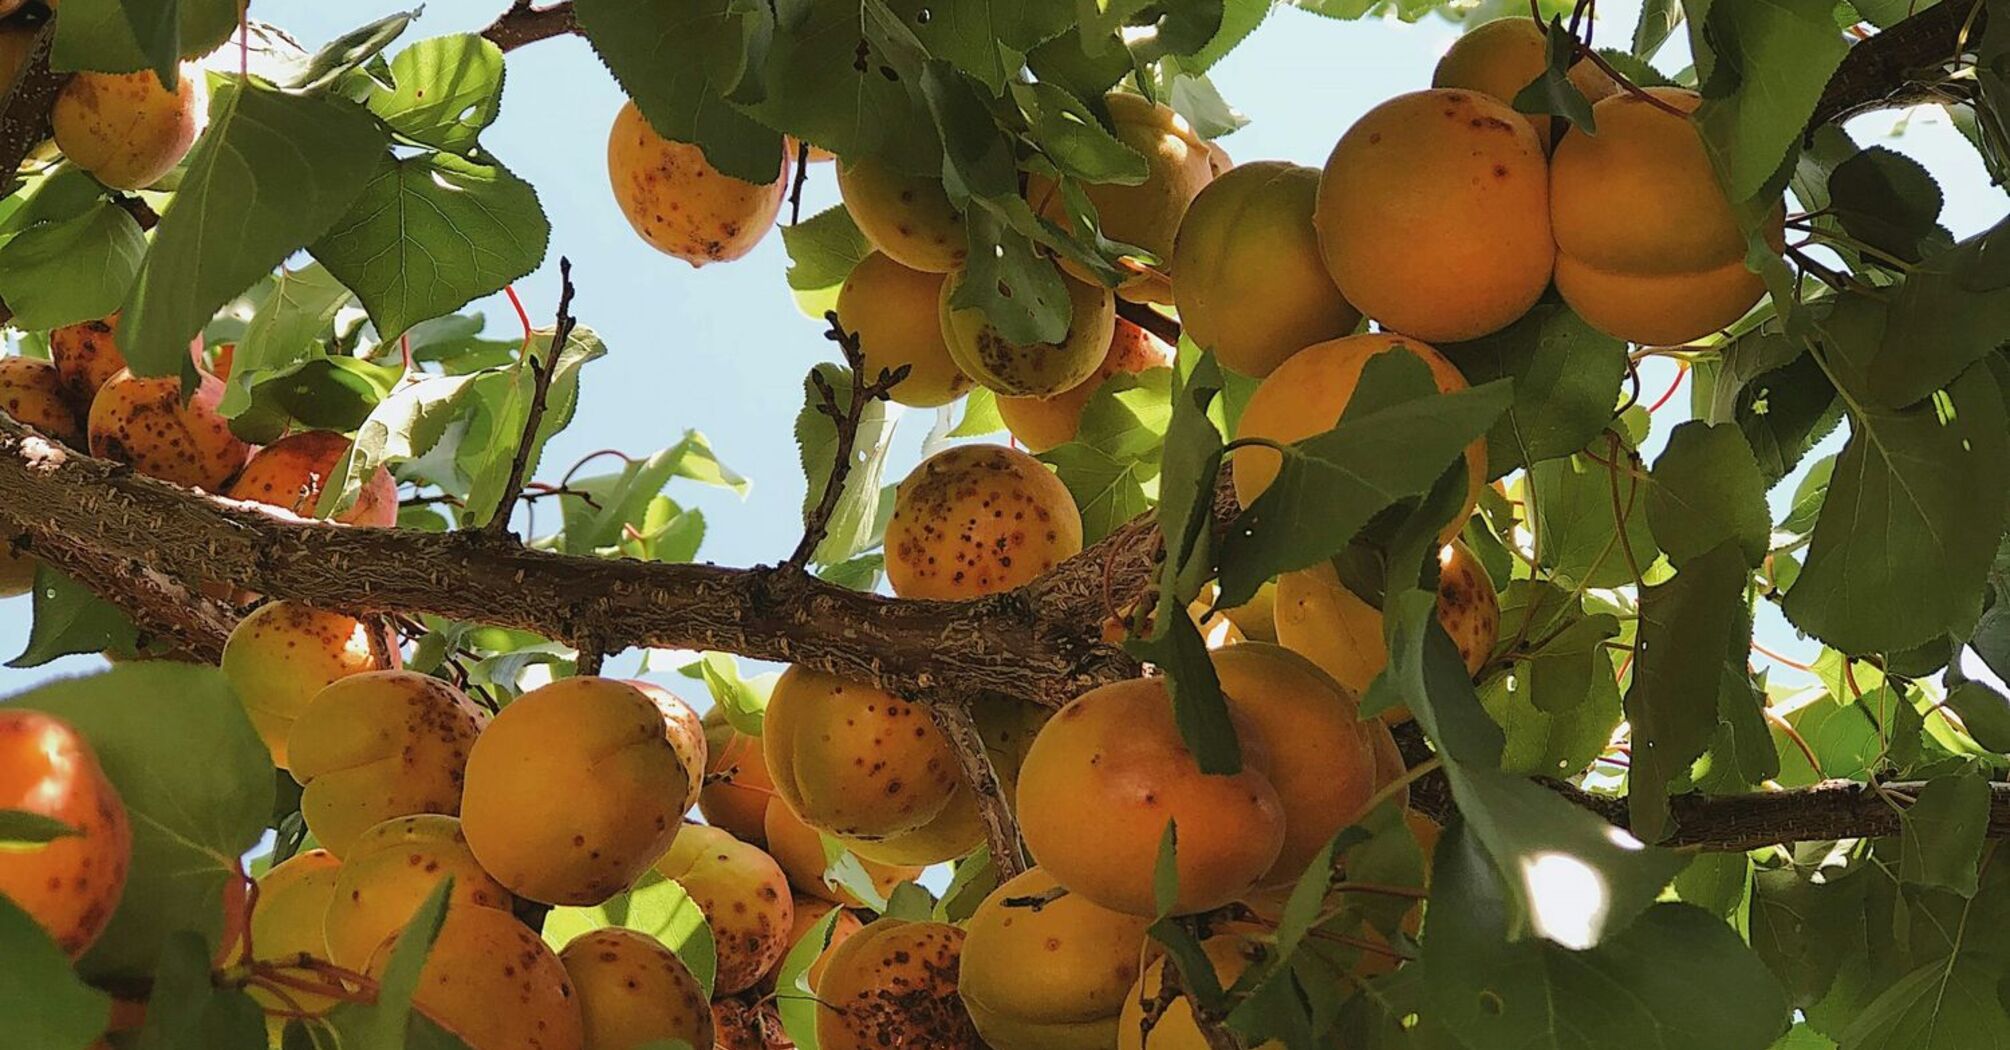 Як правильно доглядати за абрикосовими деревами, аби отримати максимальну врожайність